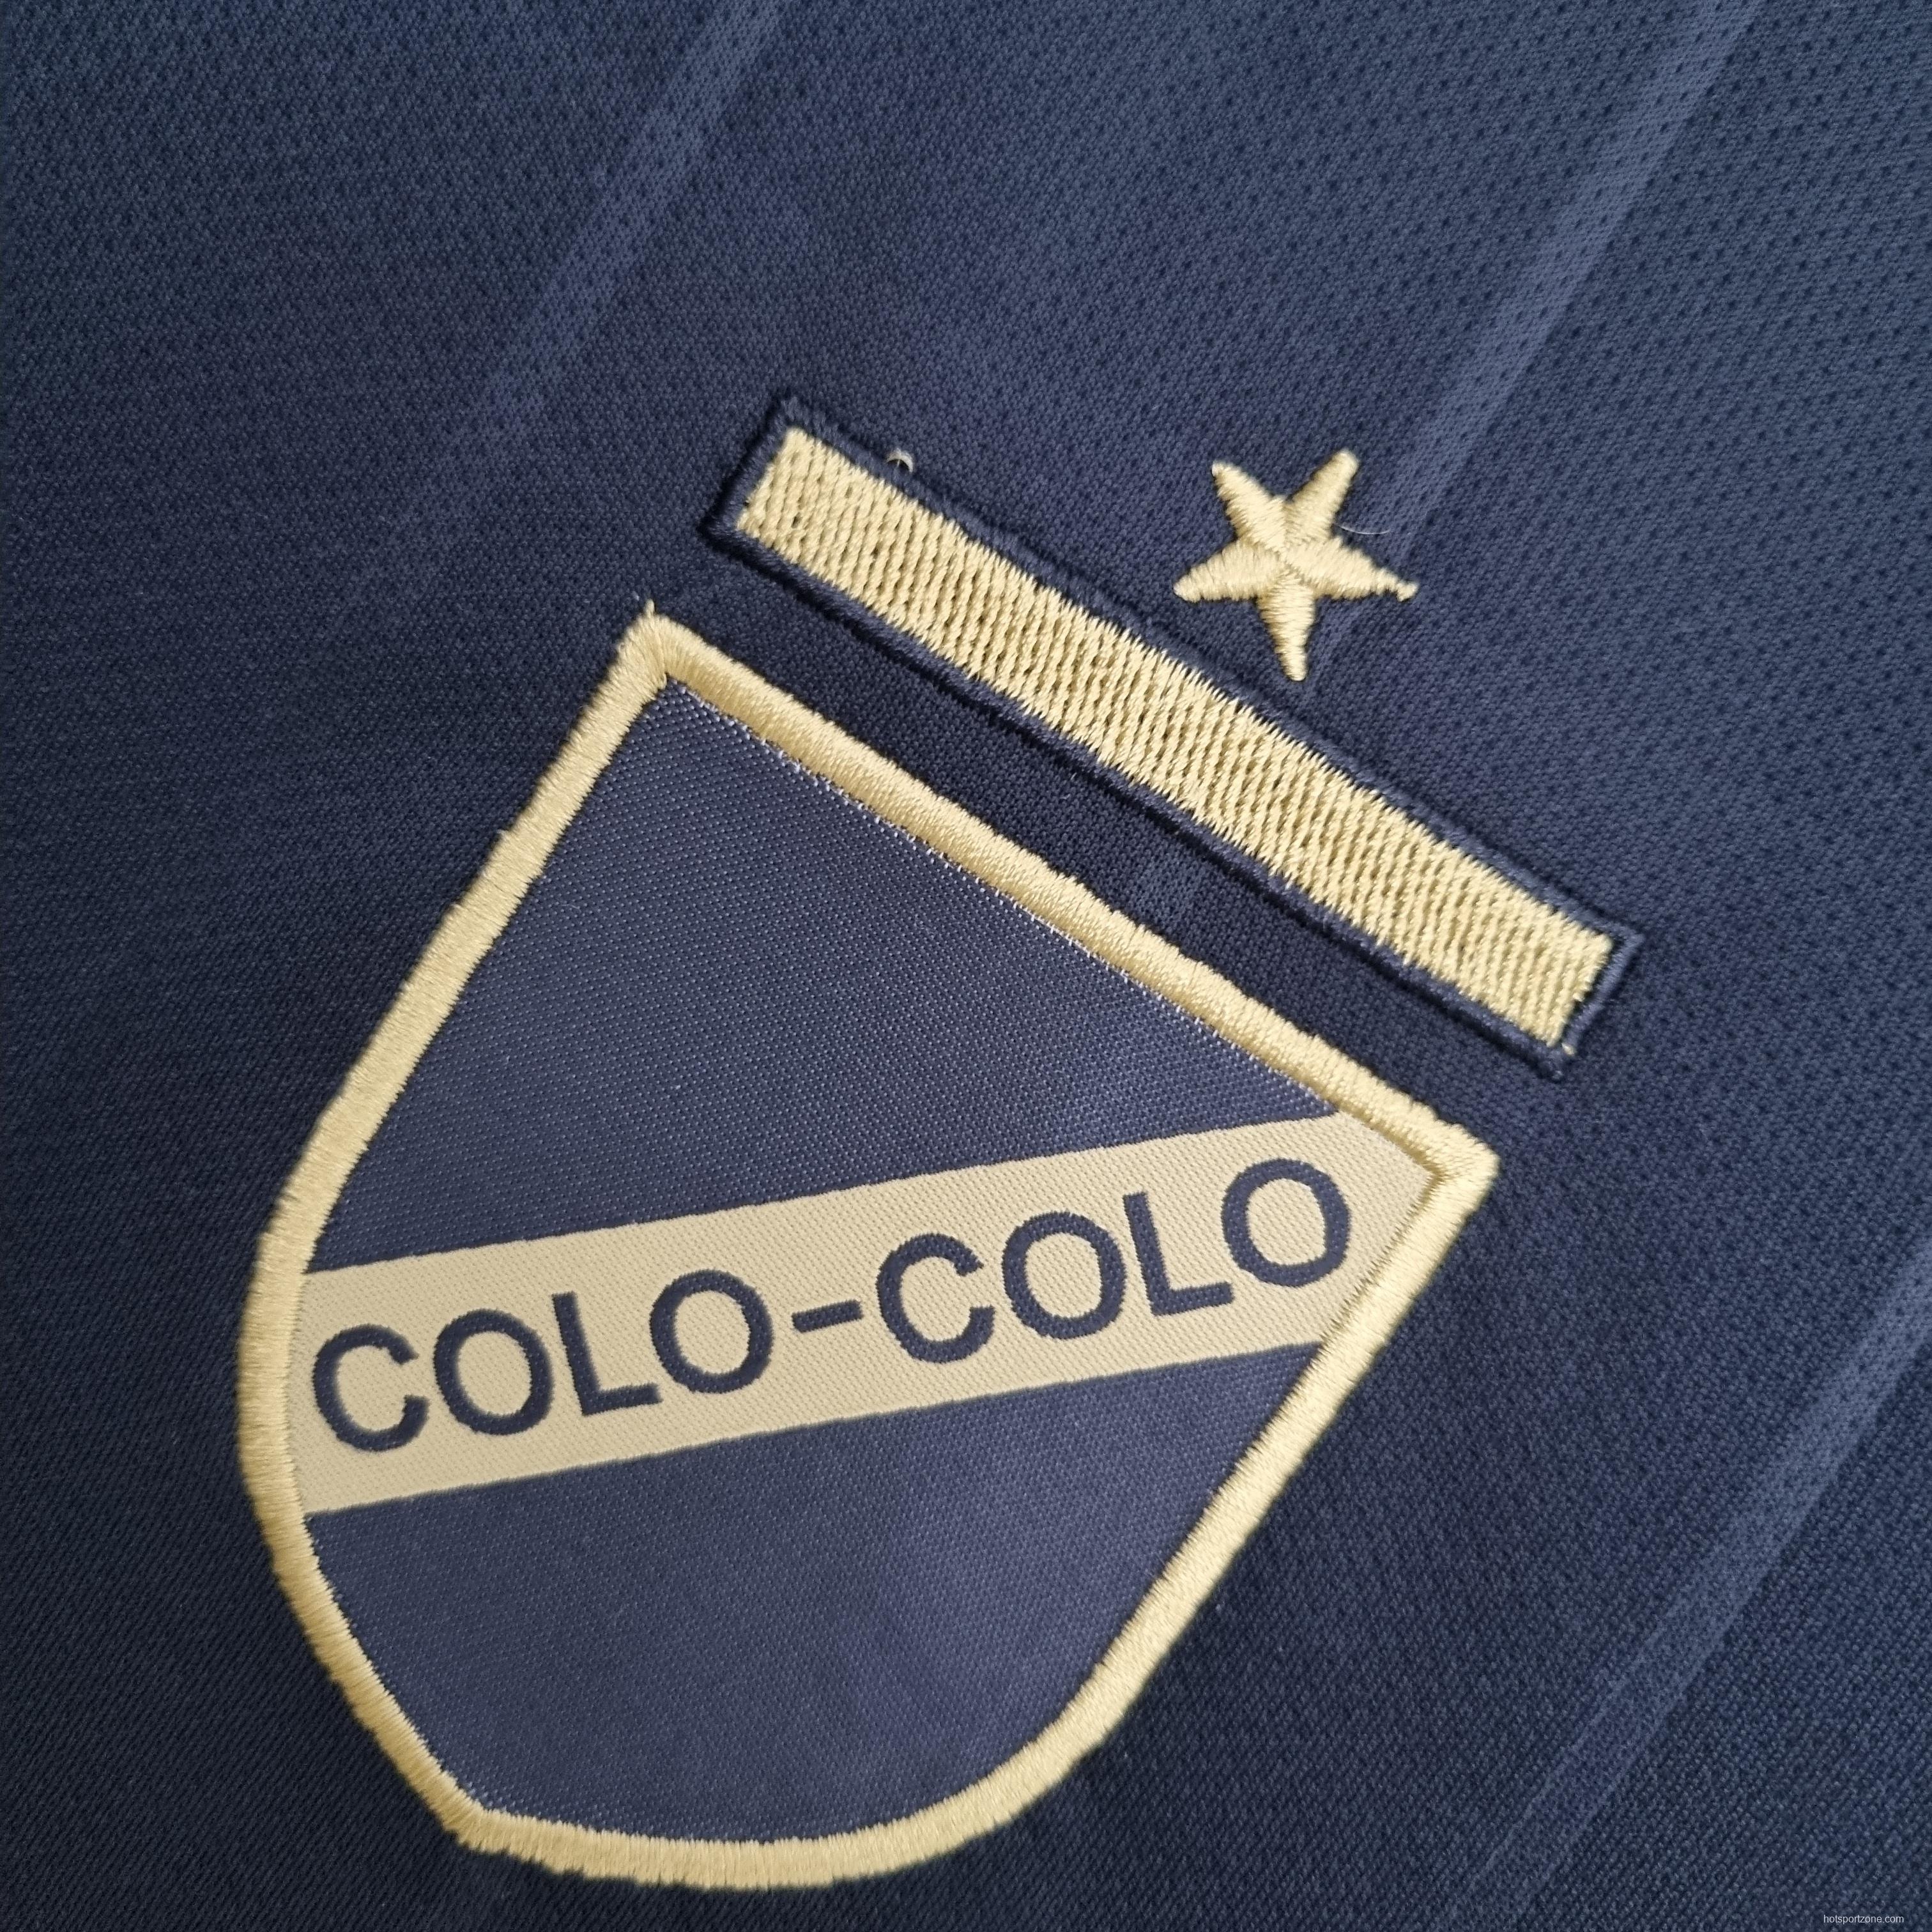 22/23 Colo Colo Commemorative Edition Black Gold Soccer Jersey